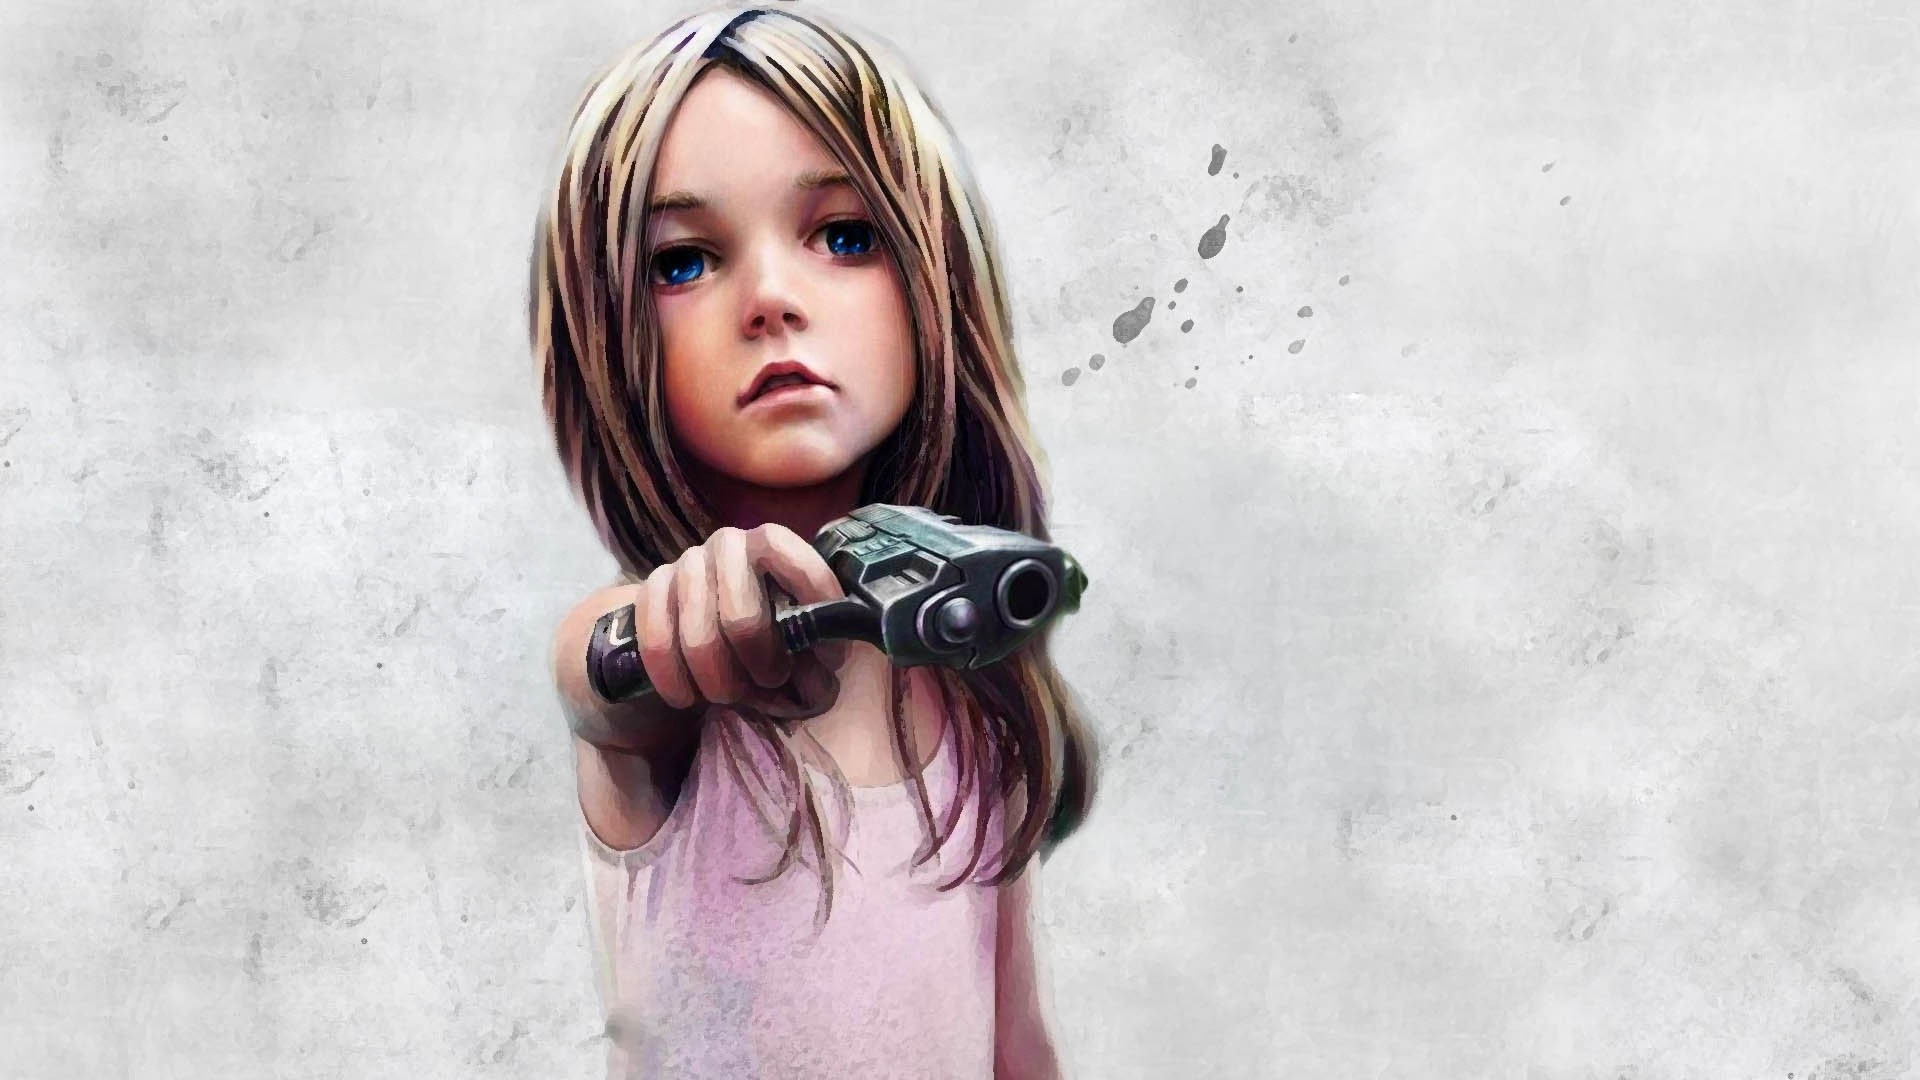 little girl with gun art